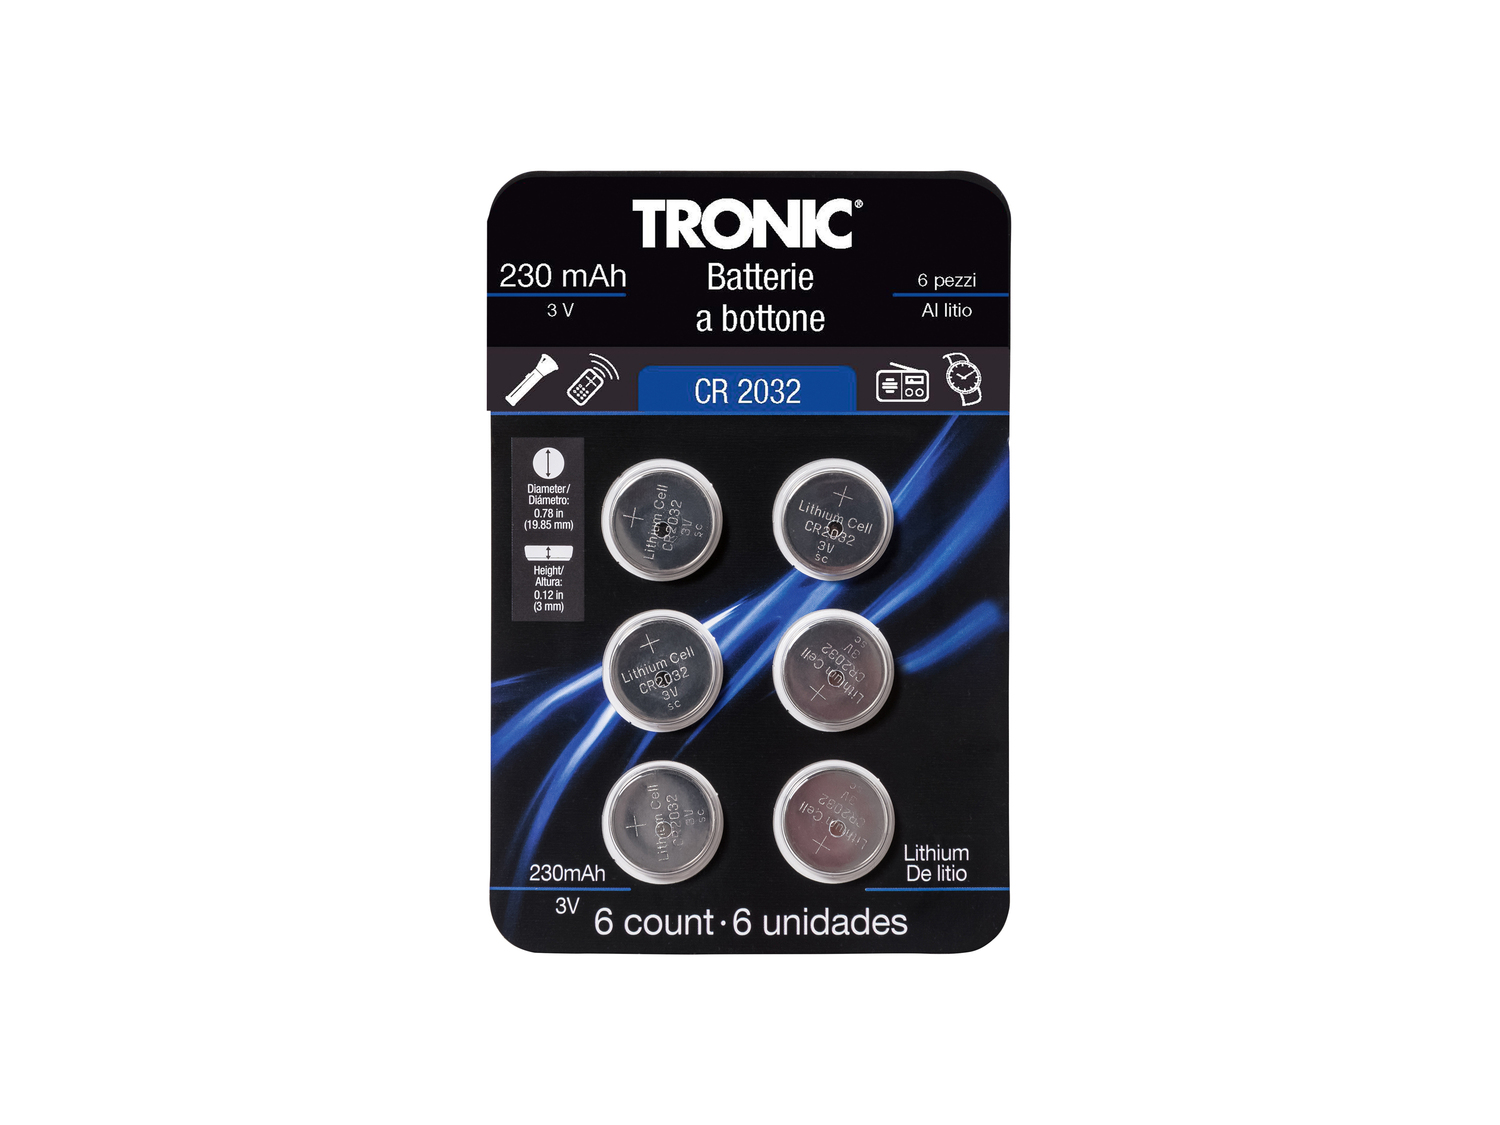 Batterie a bottone Tronic, prezzo 1.49 € 
6 pezzi 
- Alcaline o al litio
- ...